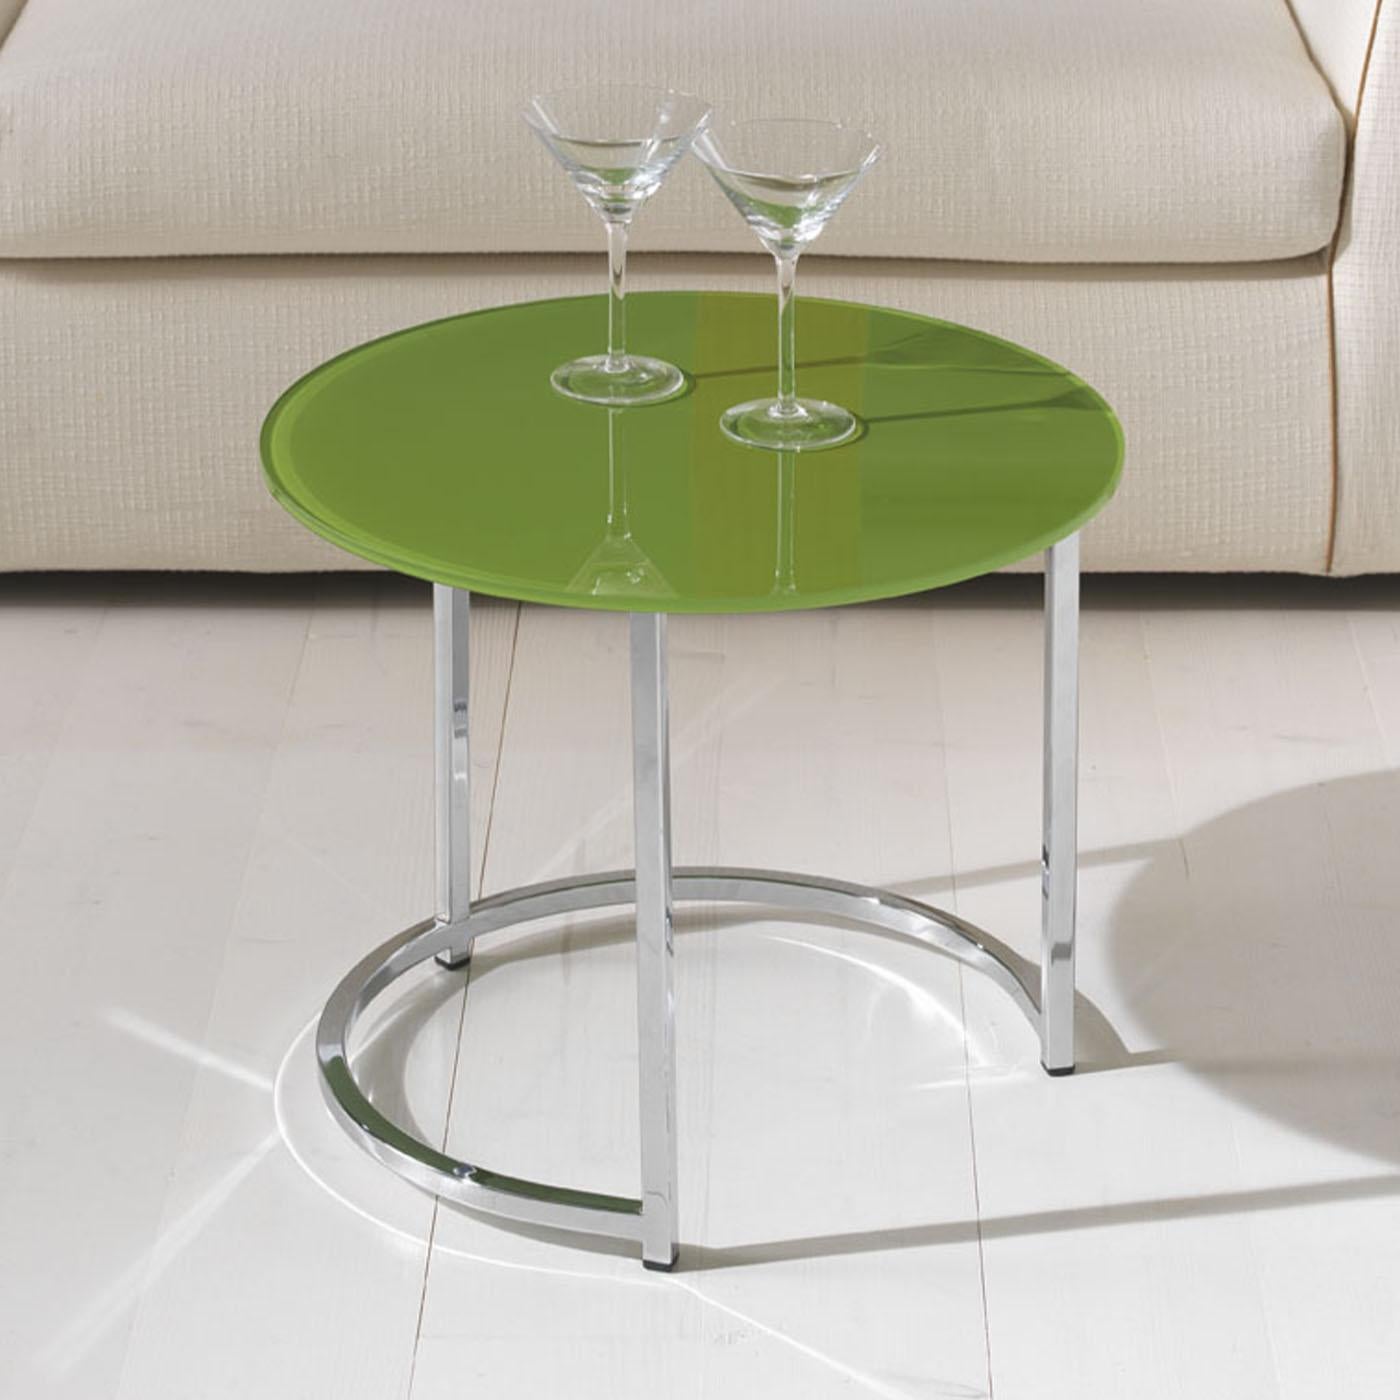 Der von Danilo Bonfanti & Gabriele Moscatelli entworfene Couchtisch ist Ausdruck von Kunstfertigkeit und Innovation. Die Tischplatte mit dem eleganten Metallgestell besteht aus einer lackierten Glasoberfläche, die von einer Chromstruktur getragen